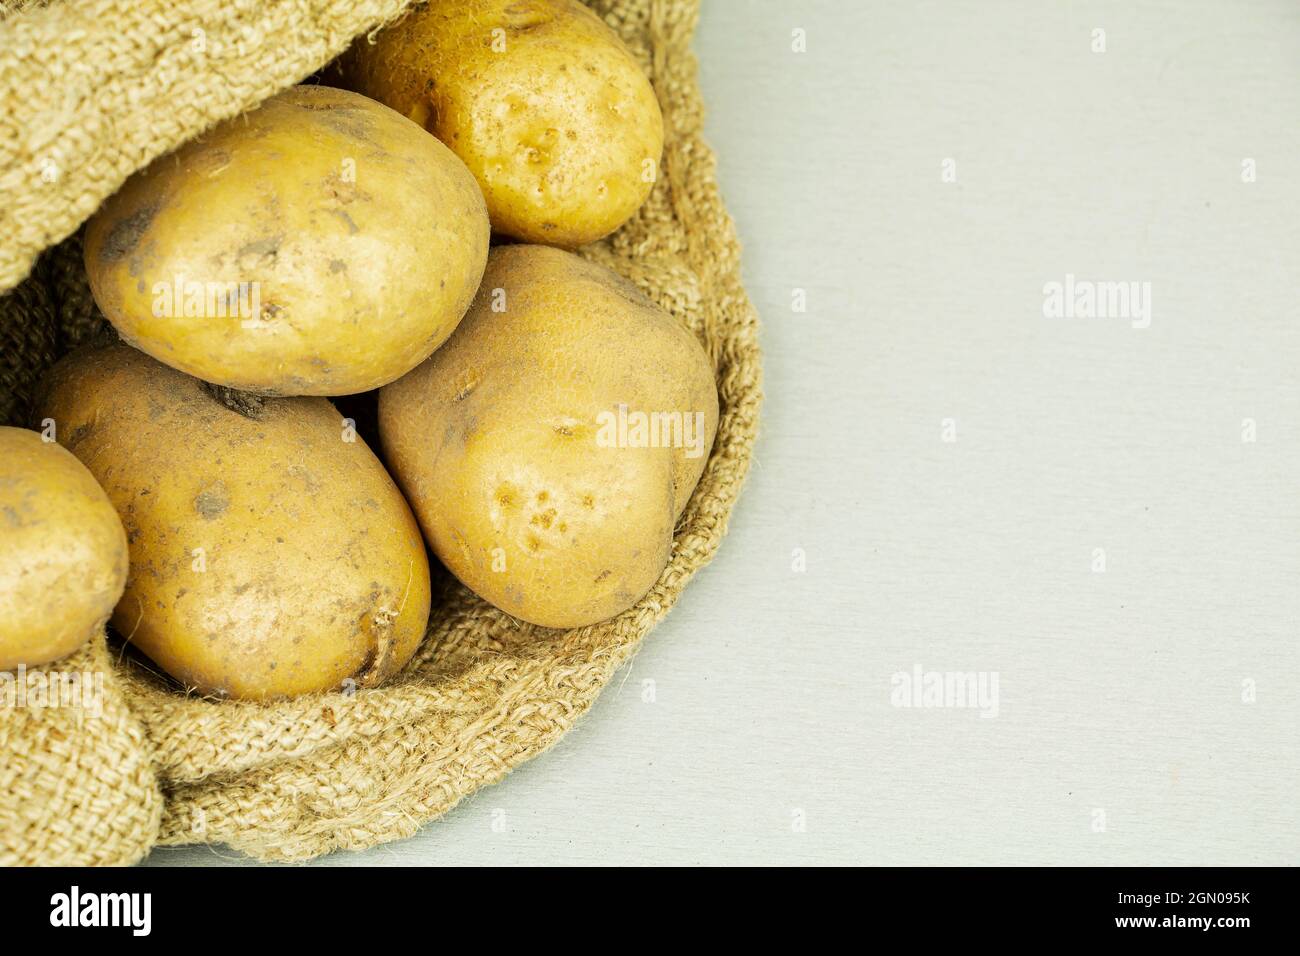 Raccolta di patate grandi fresche in un sacchetto. Prodotti alimentari Foto Stock